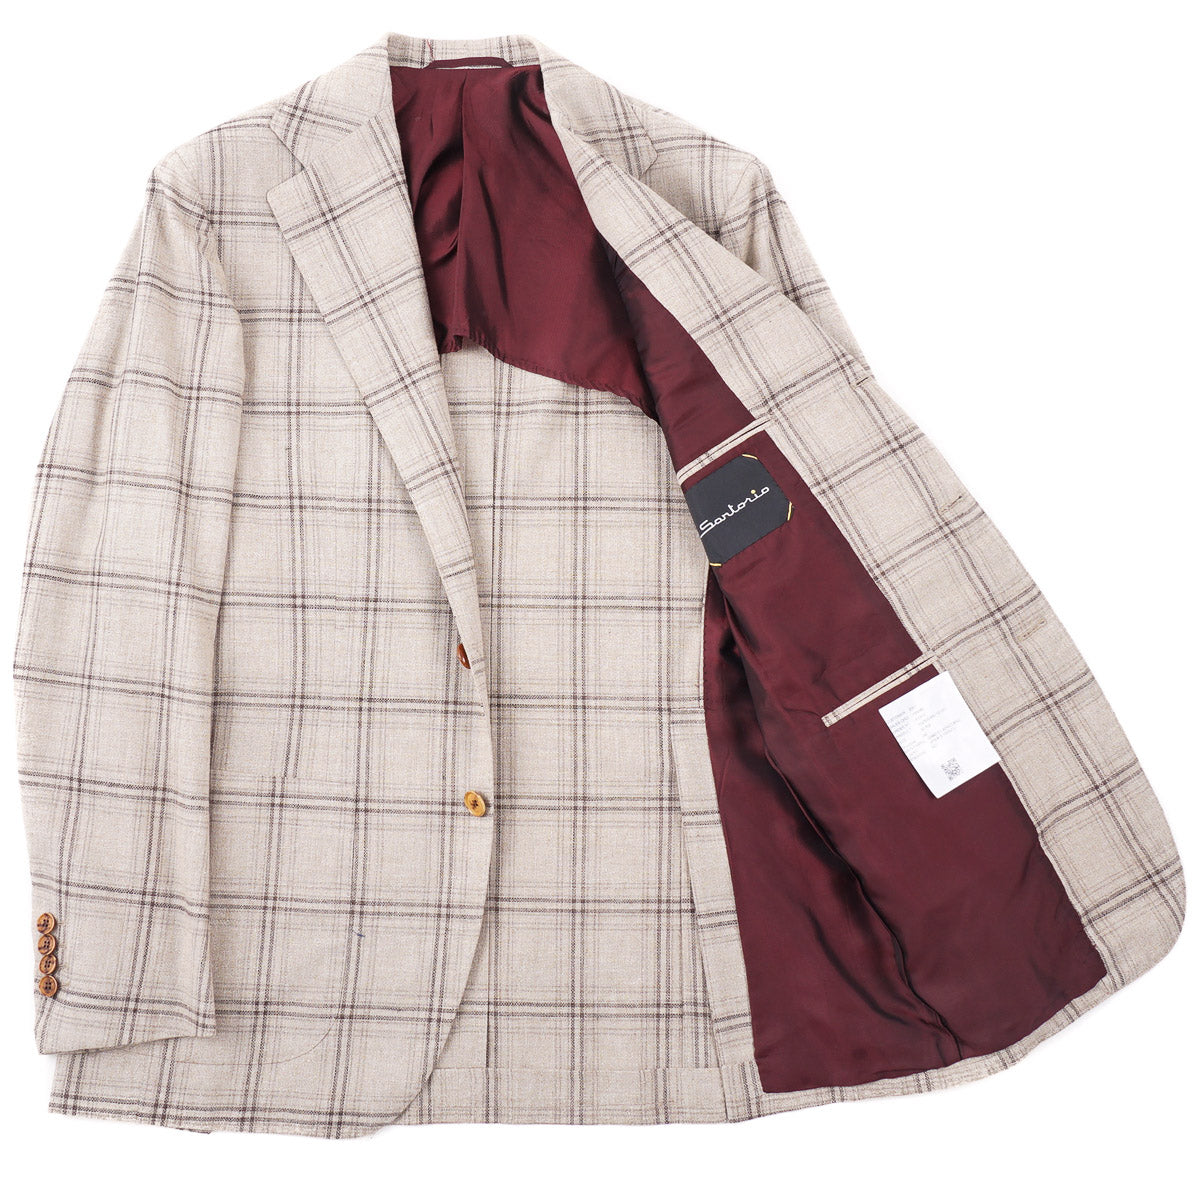 Sartorio Woven Cotton-Linen Sport Coat - Top Shelf Apparel